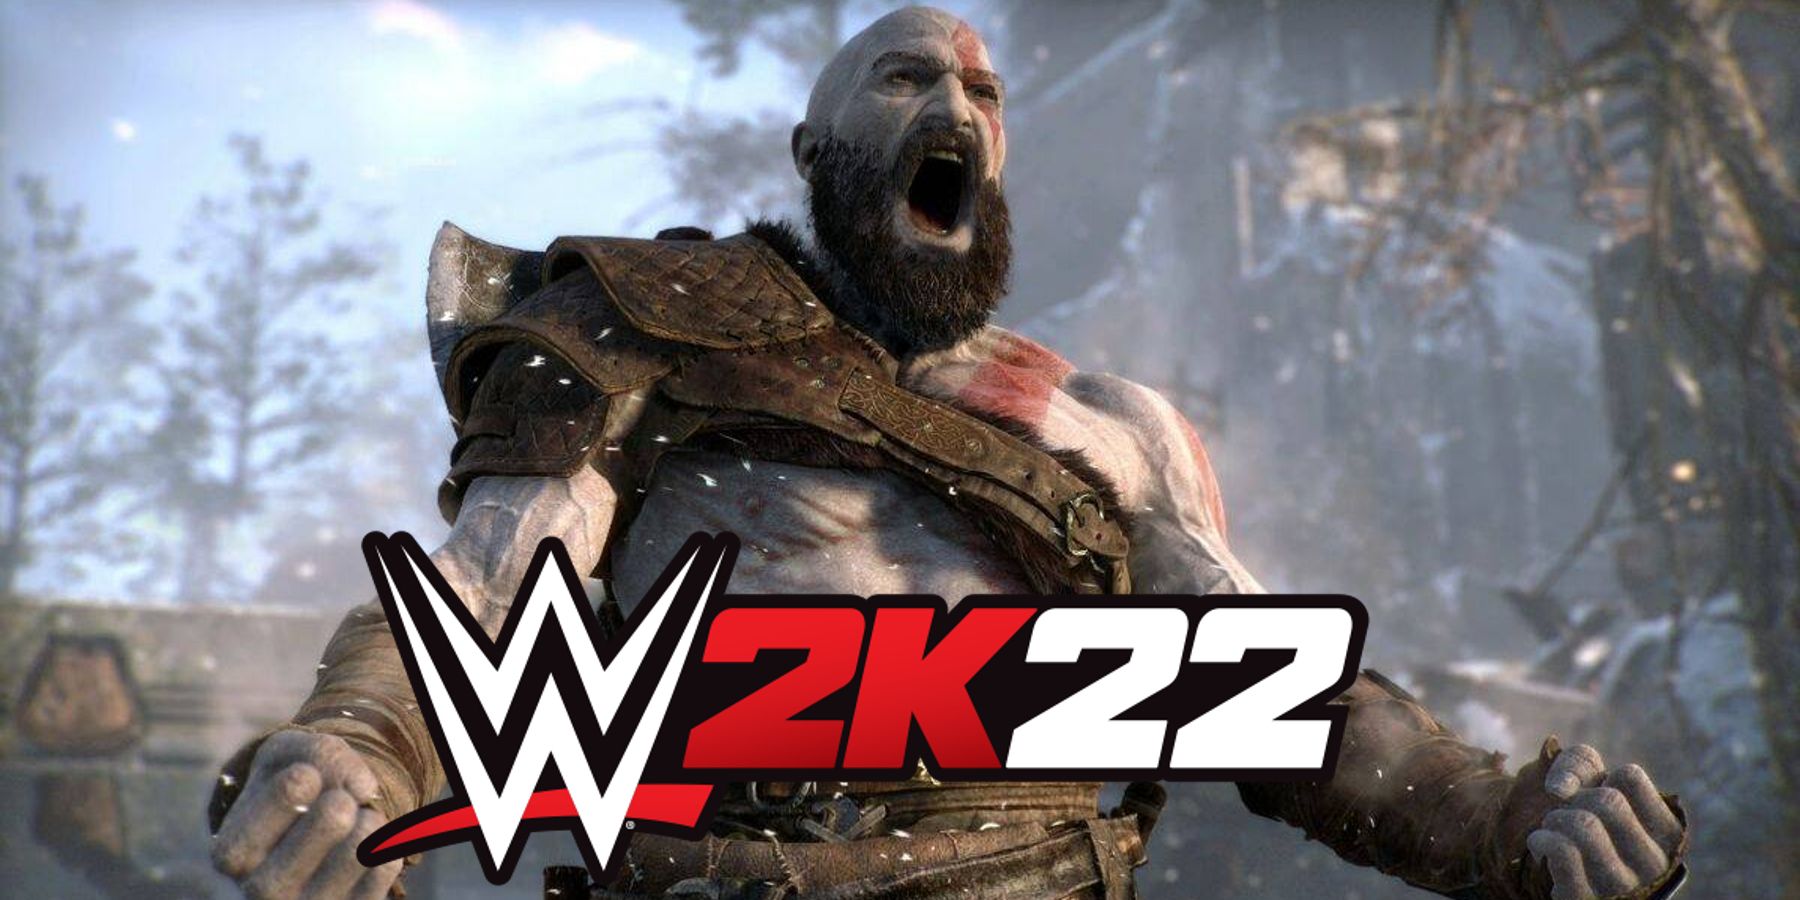 god of war kratos yelling spartan rage wwe 2k22 logo